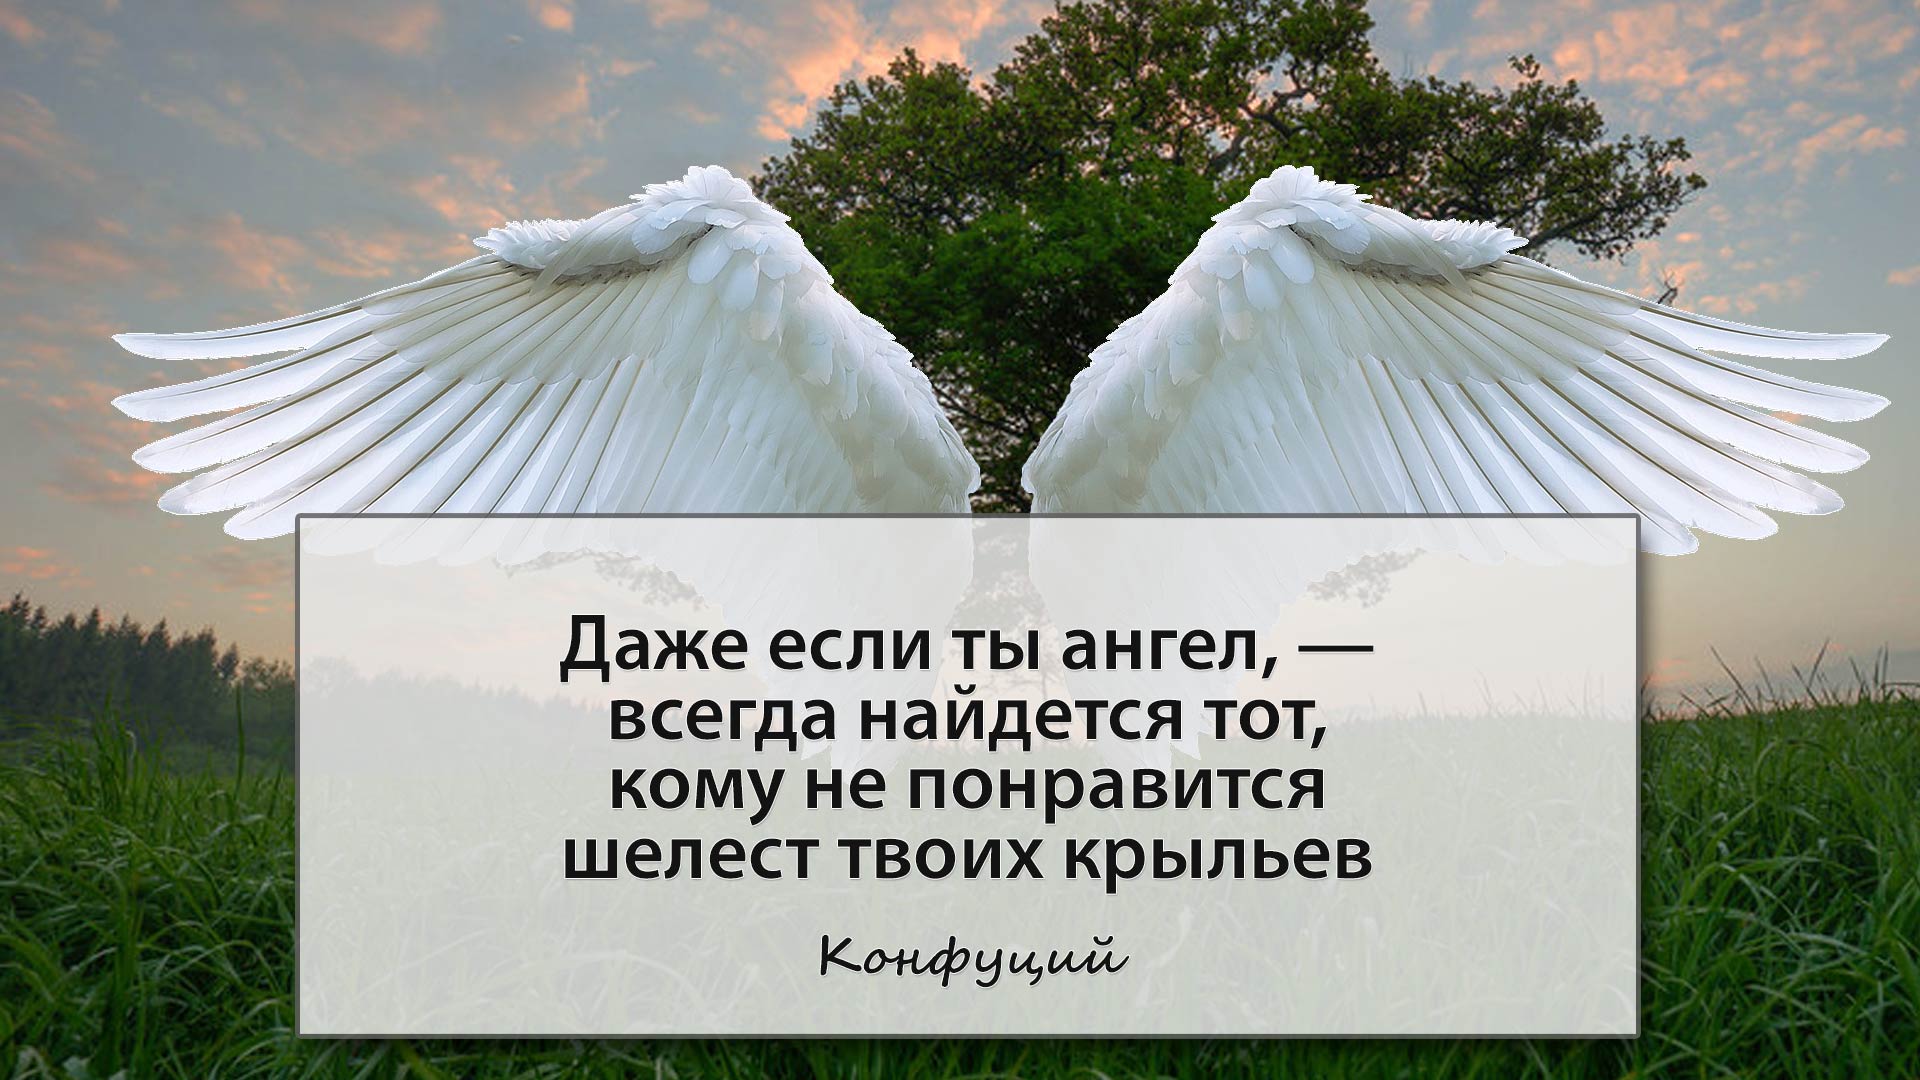 Даже если ты ангел, — всегда найдется тот, кому не понравится шелест твоих крыльев -- Конфуций